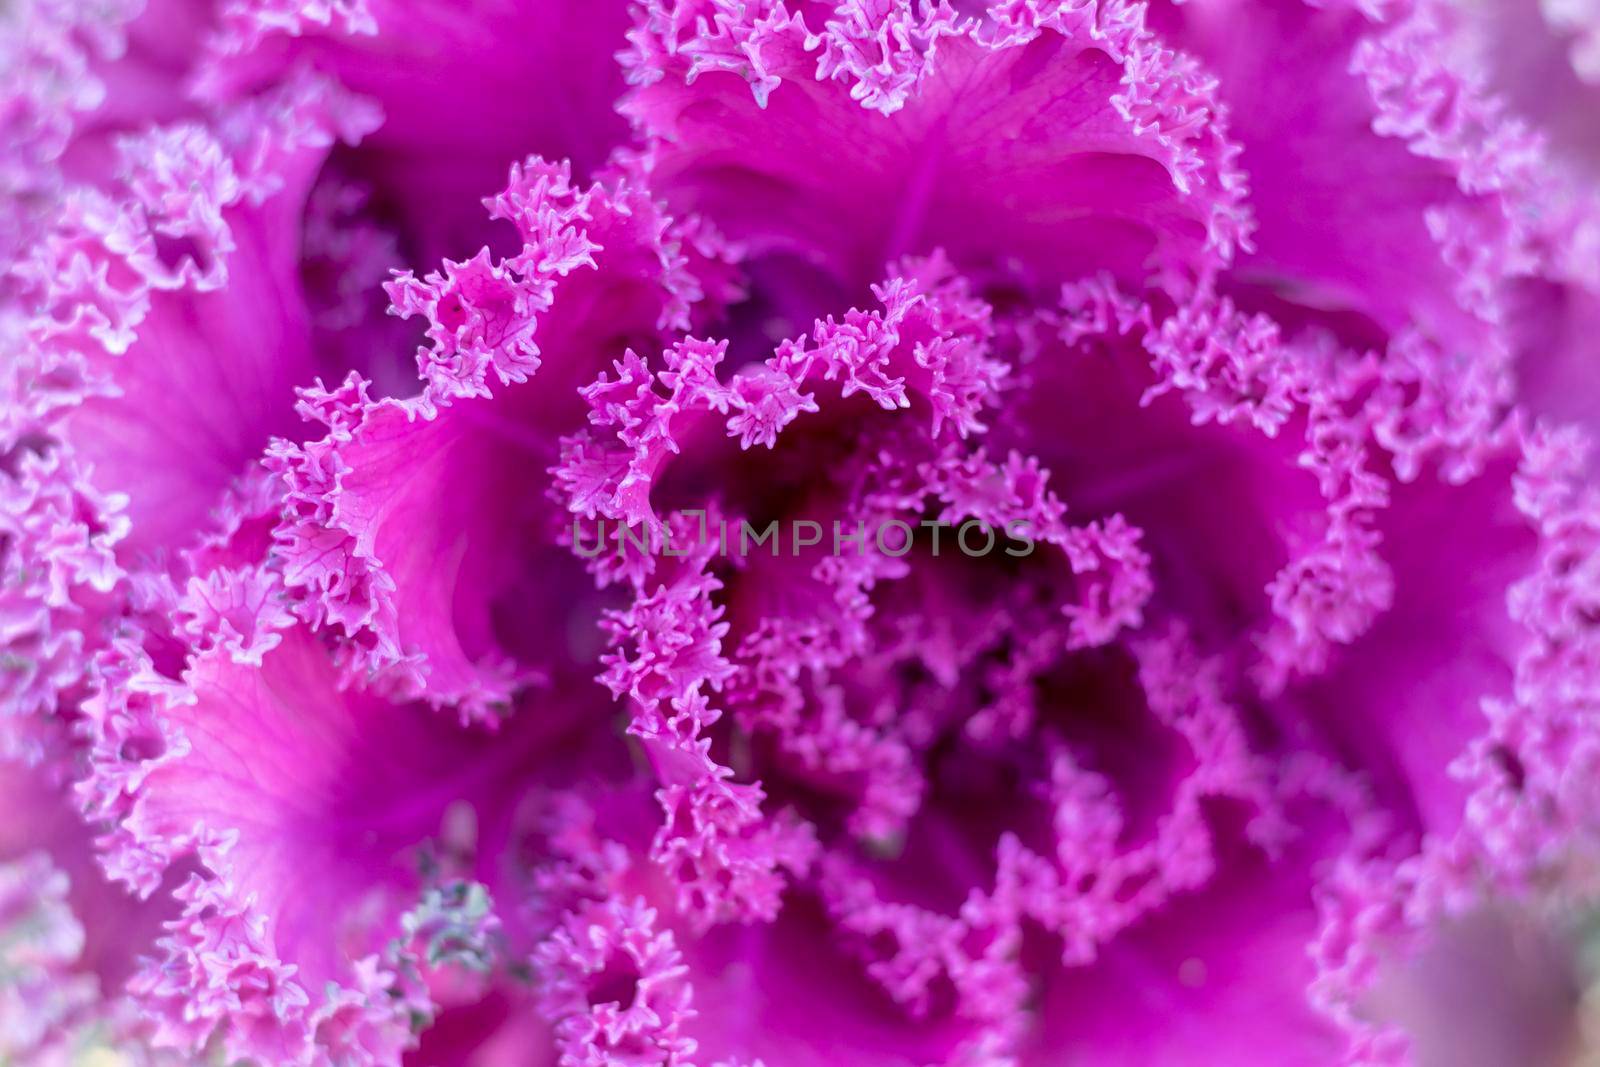 Brassica oleracea flowering plant closeup